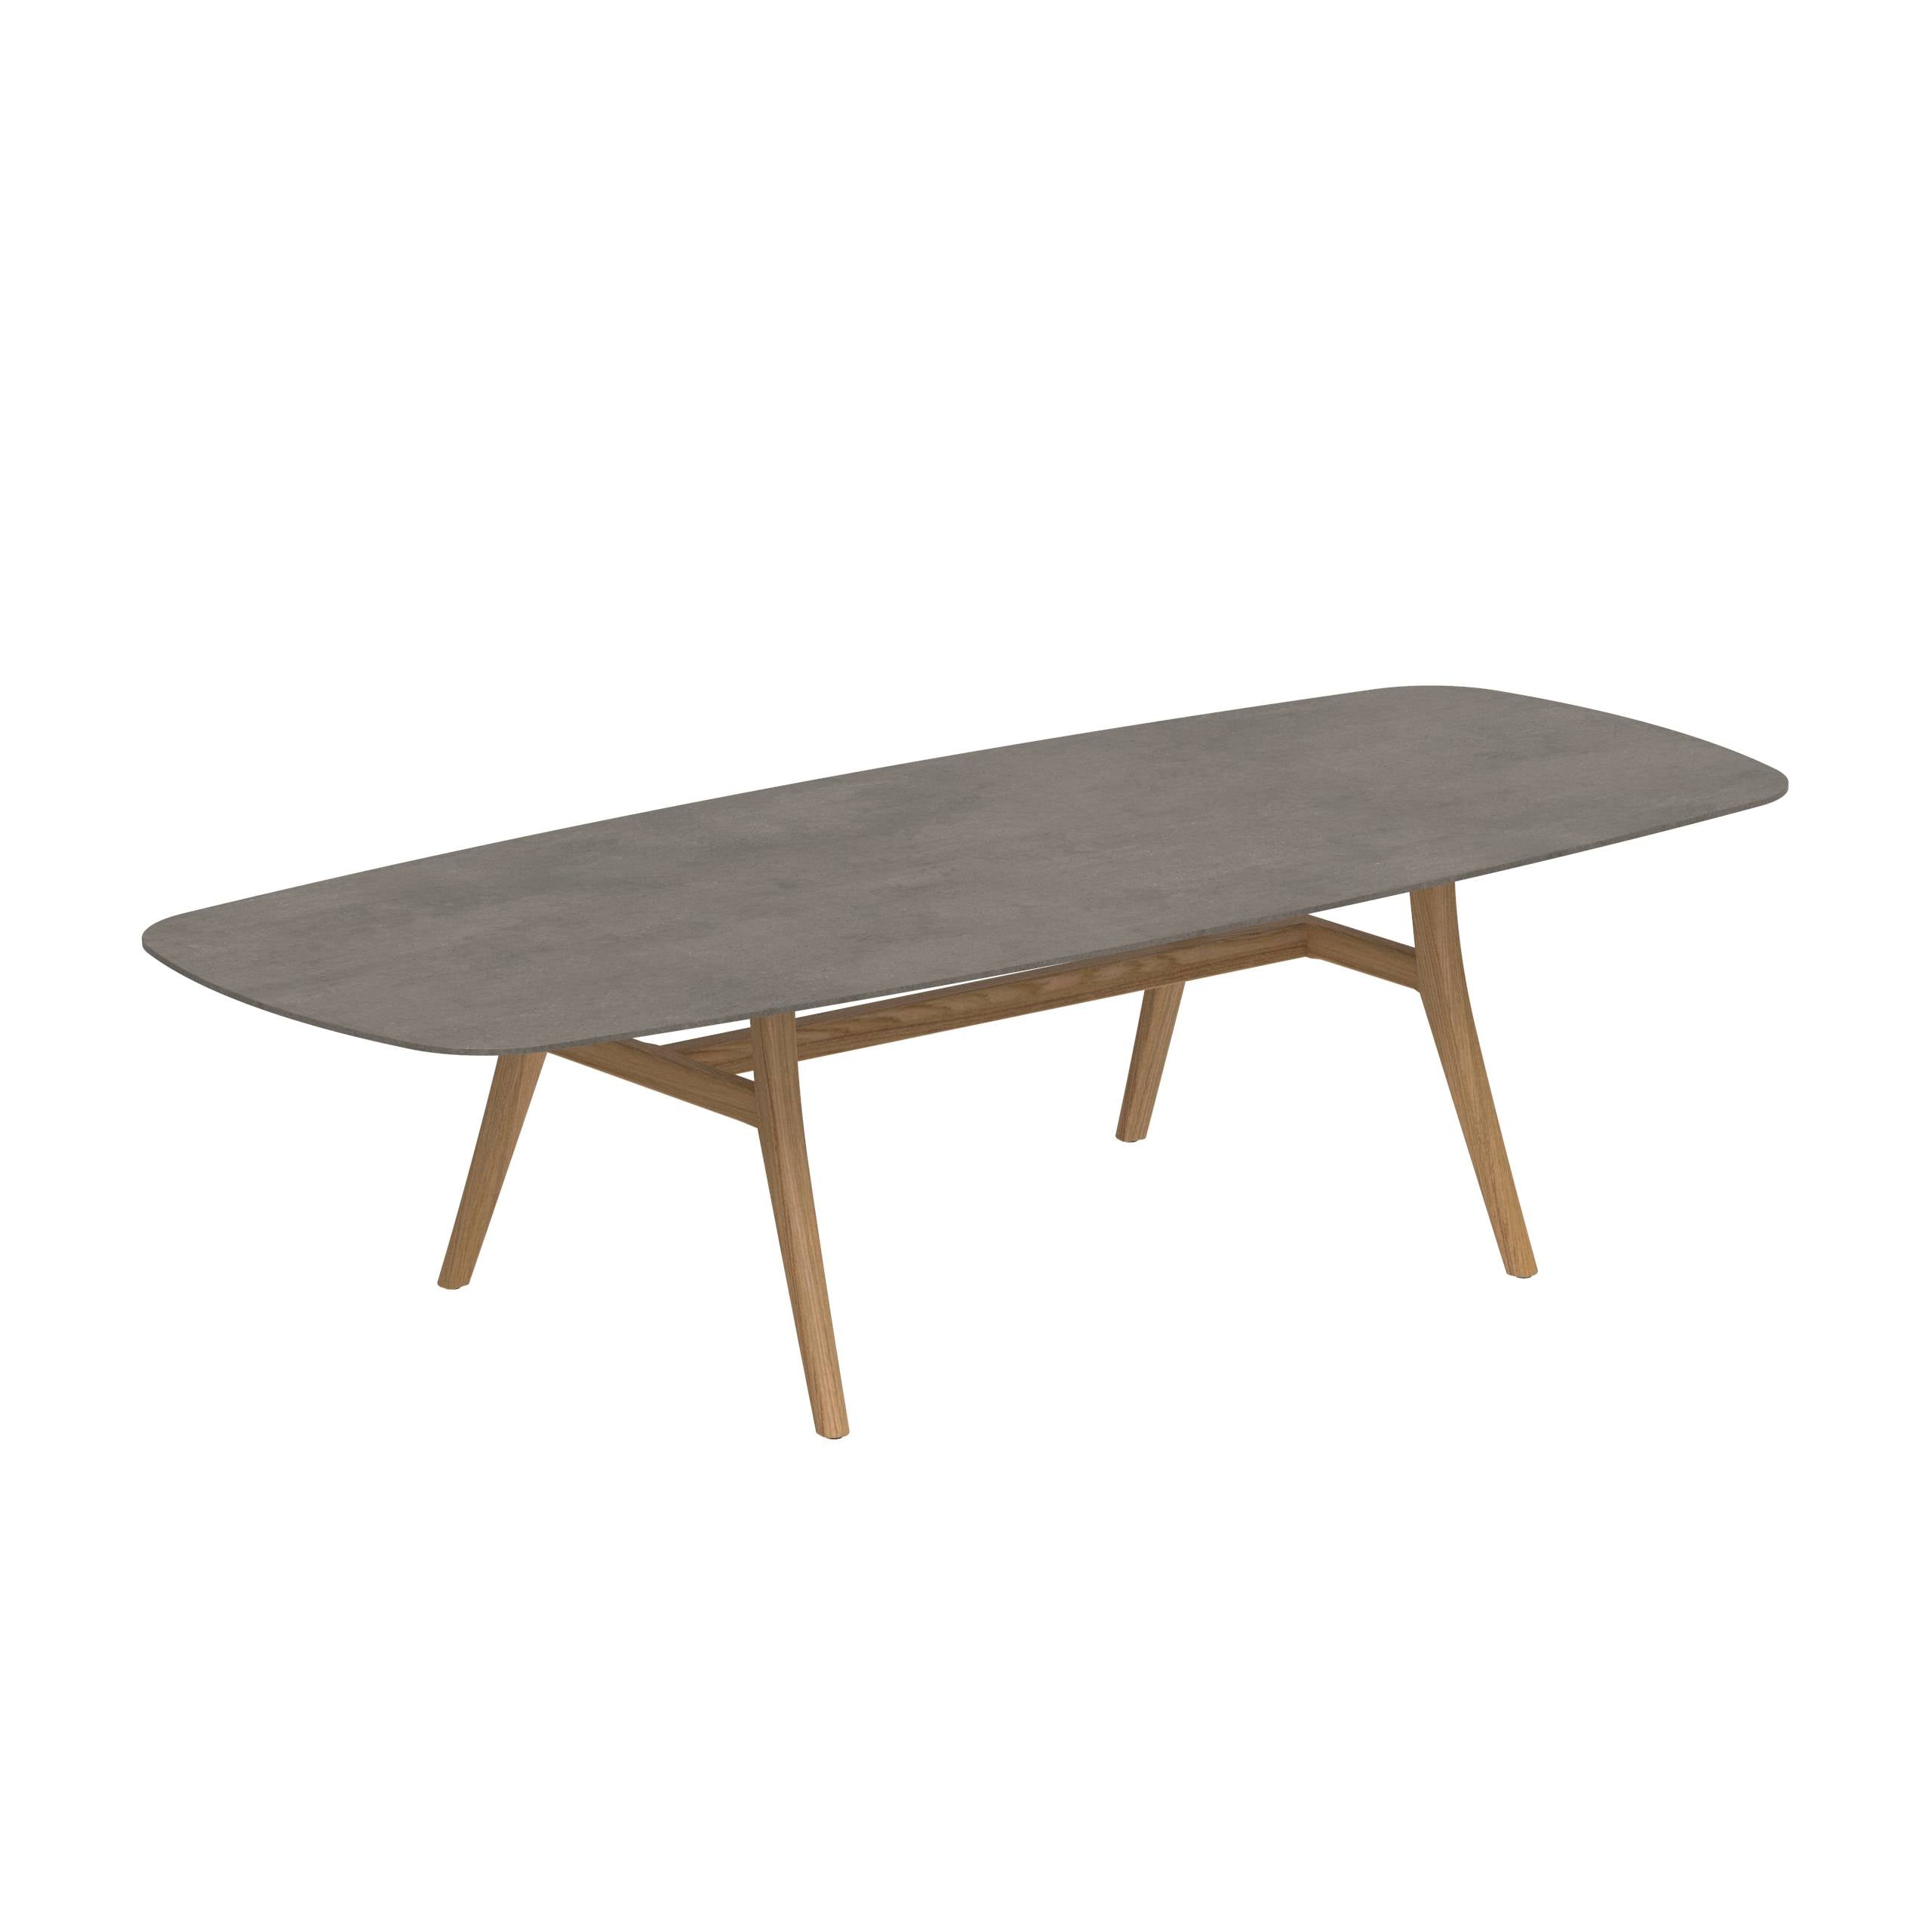 Zidiz Table 300x120cm Ceramic Terra Marrone